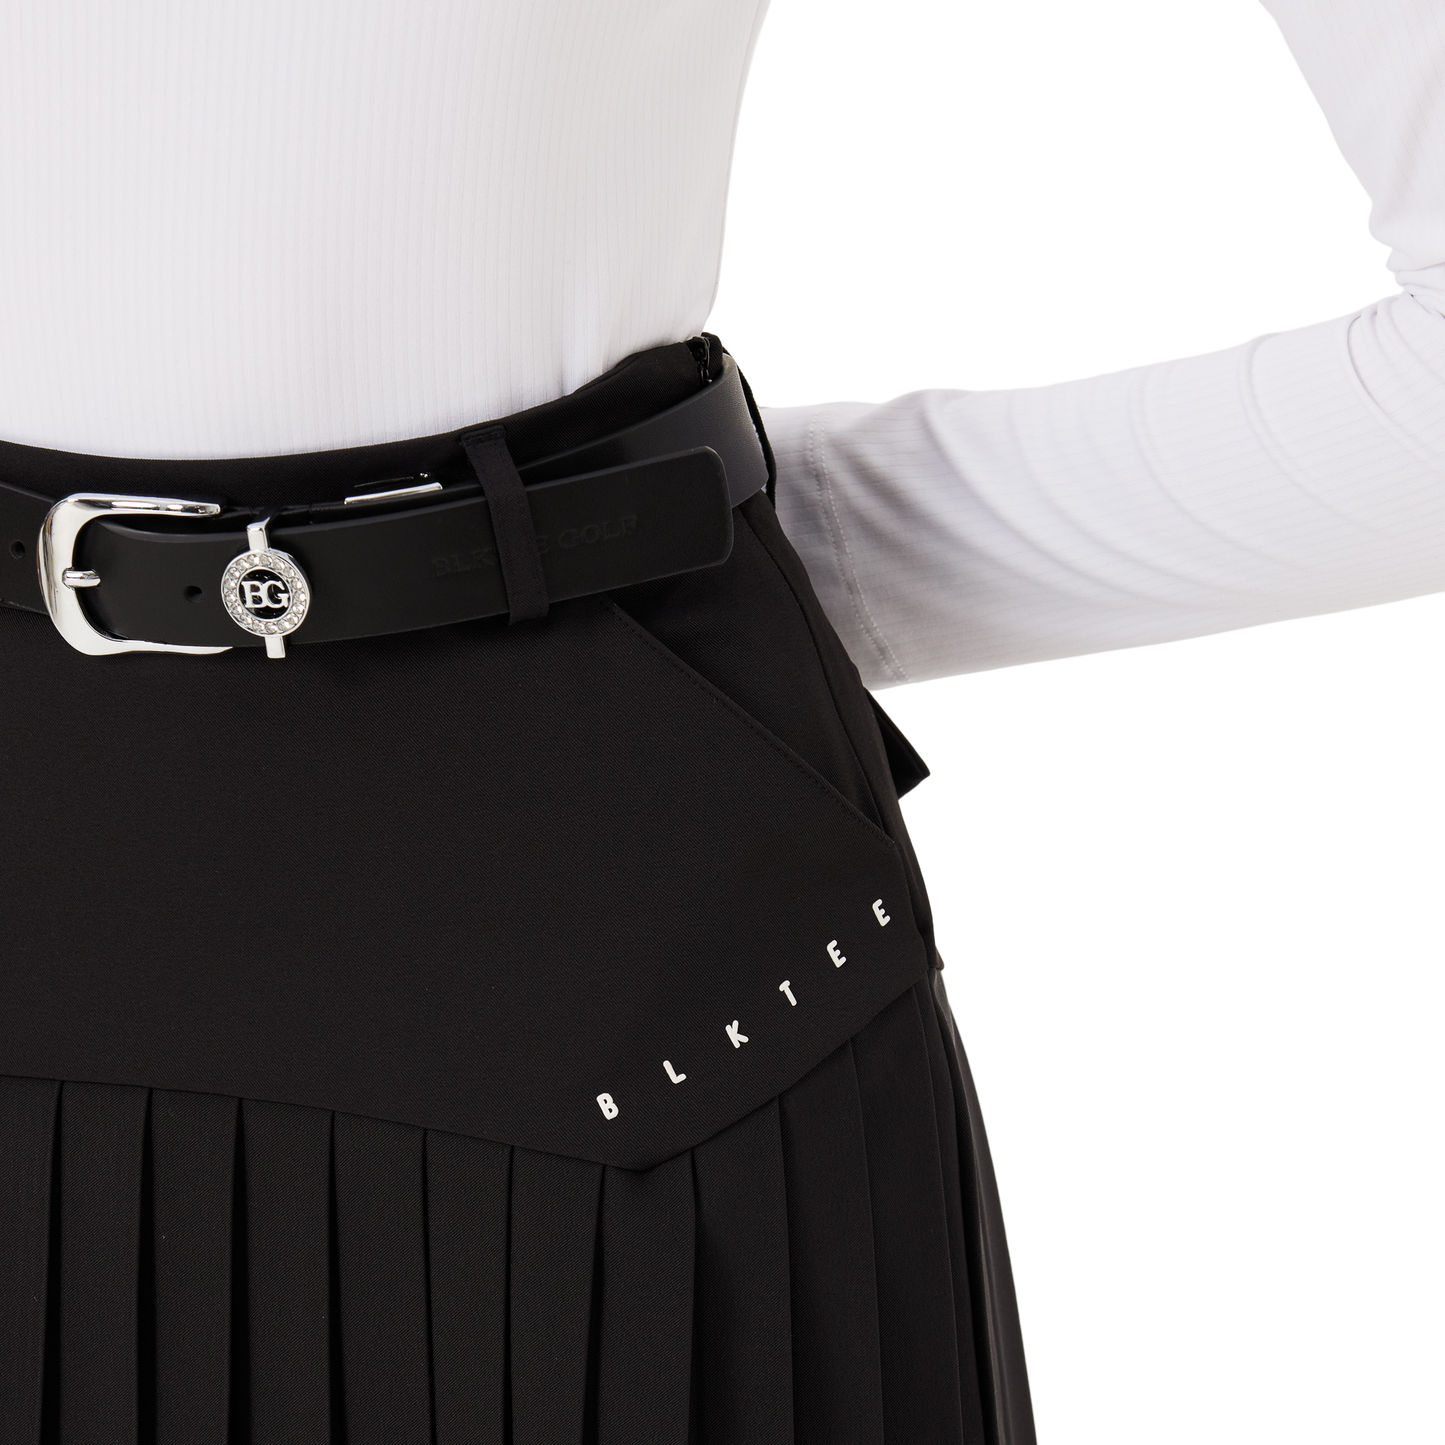 BLKTEE pleated women's skirt (black)